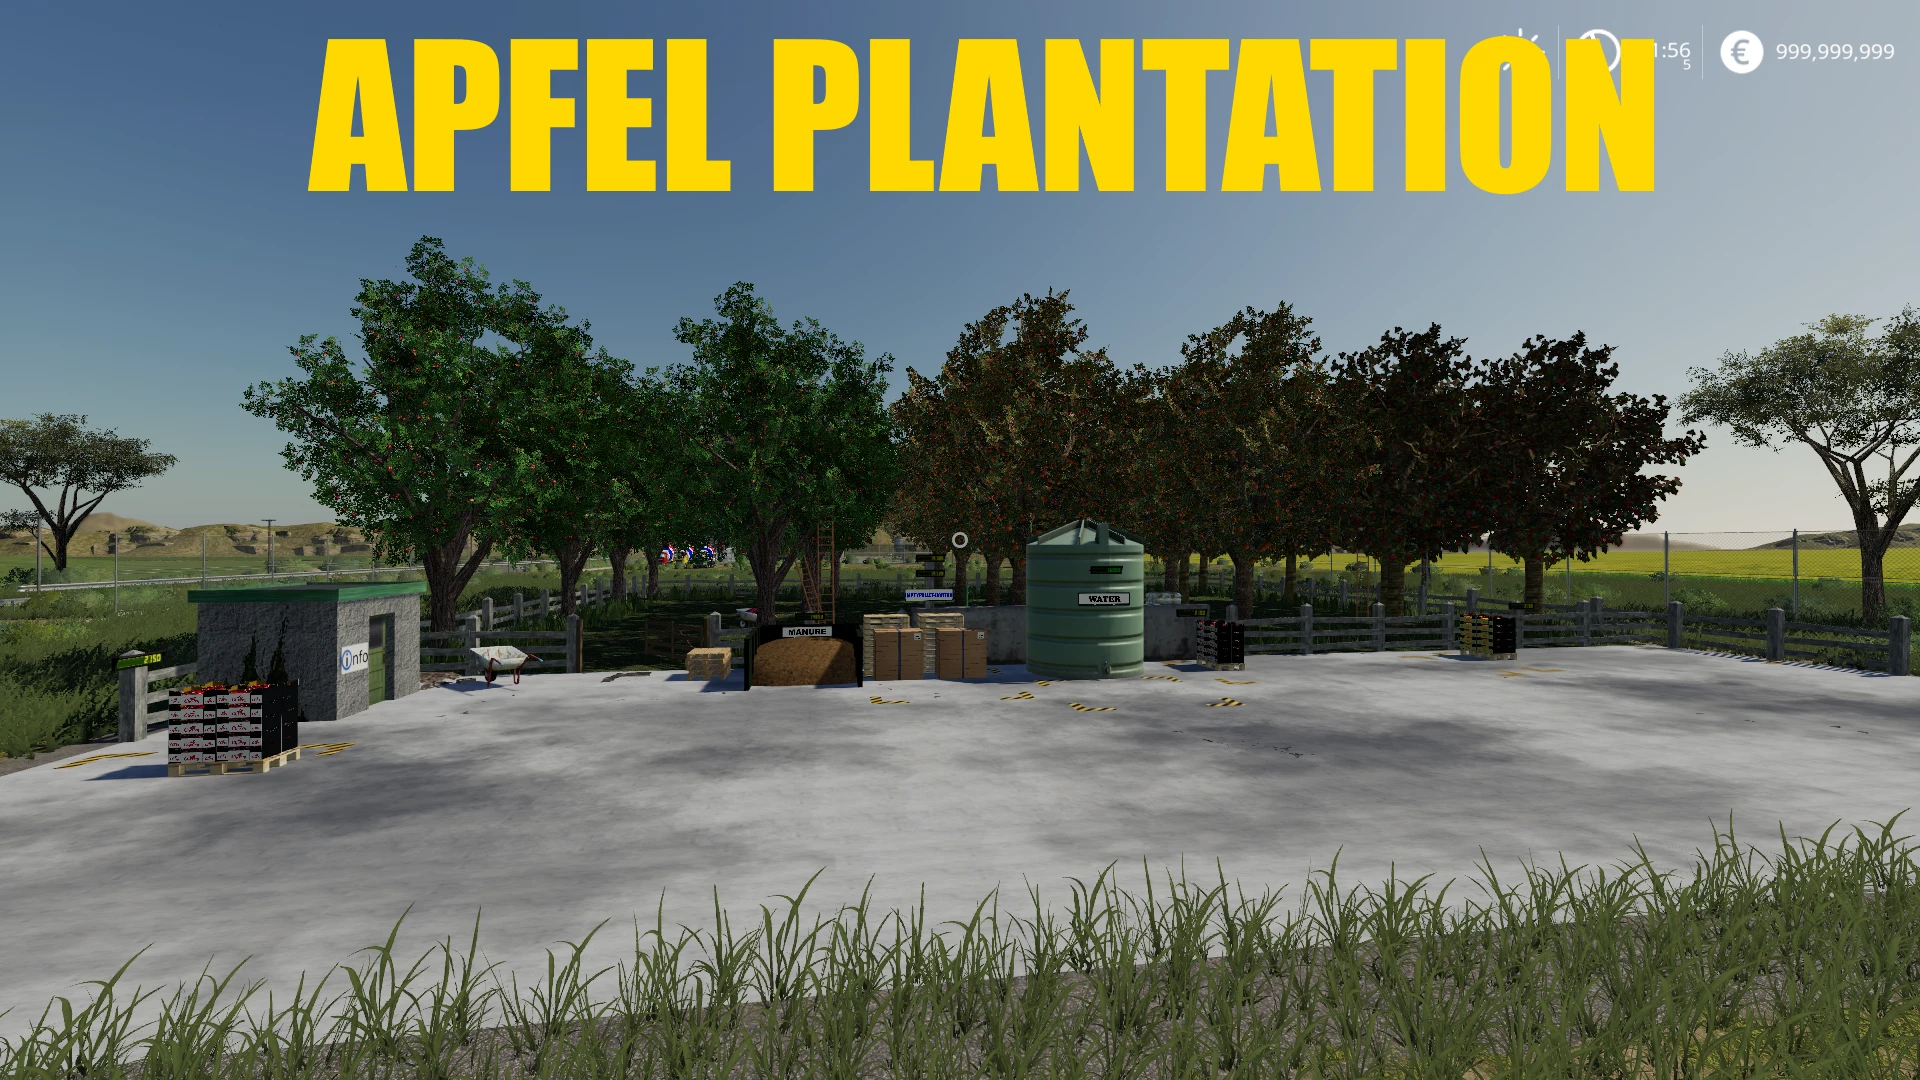 APFEL PLANTATION FACTORY V1.1